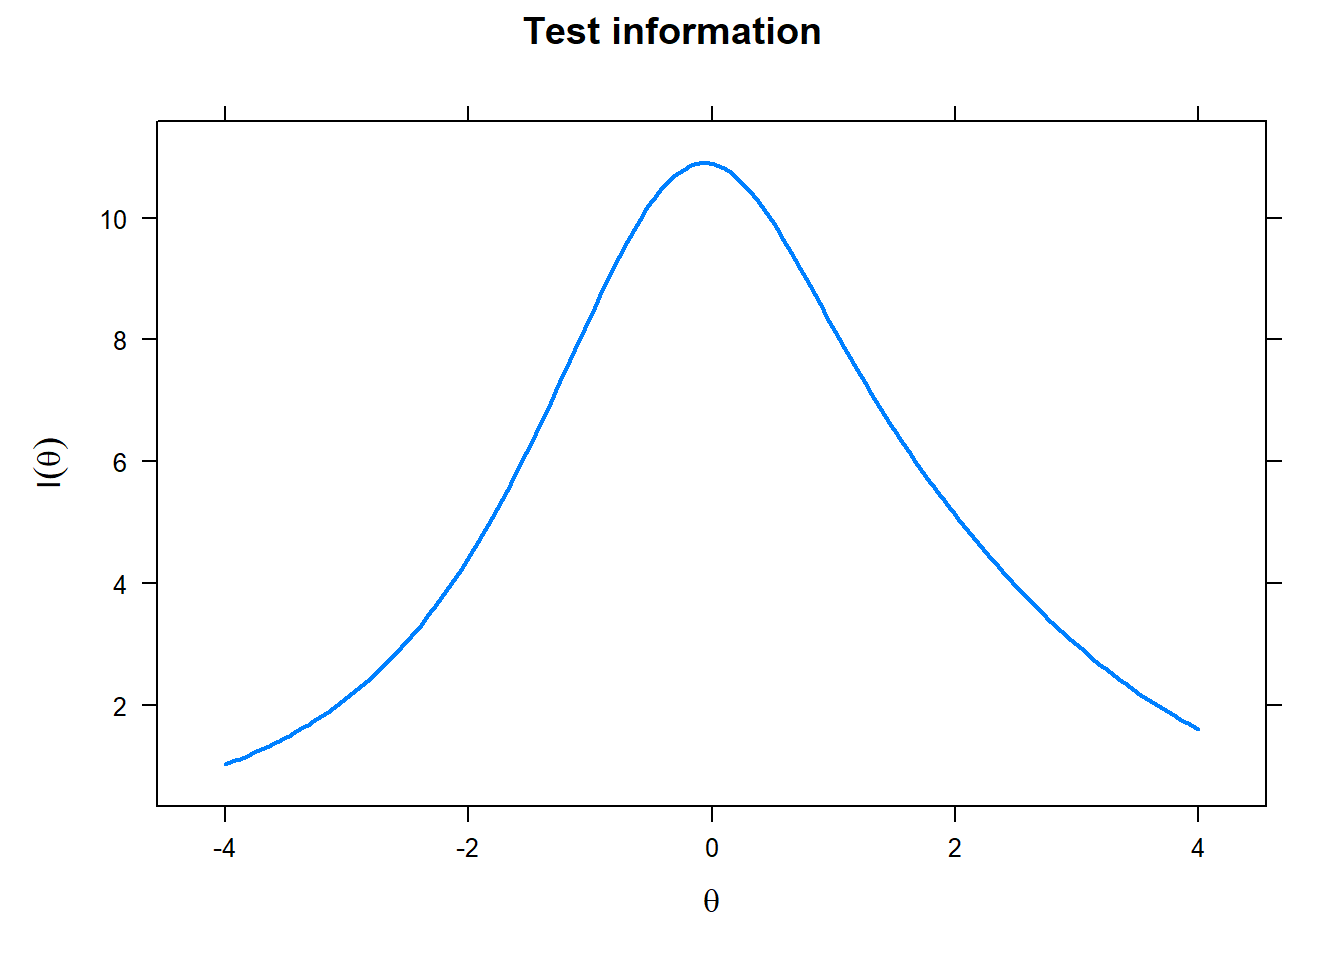 Test information curve: Investigative